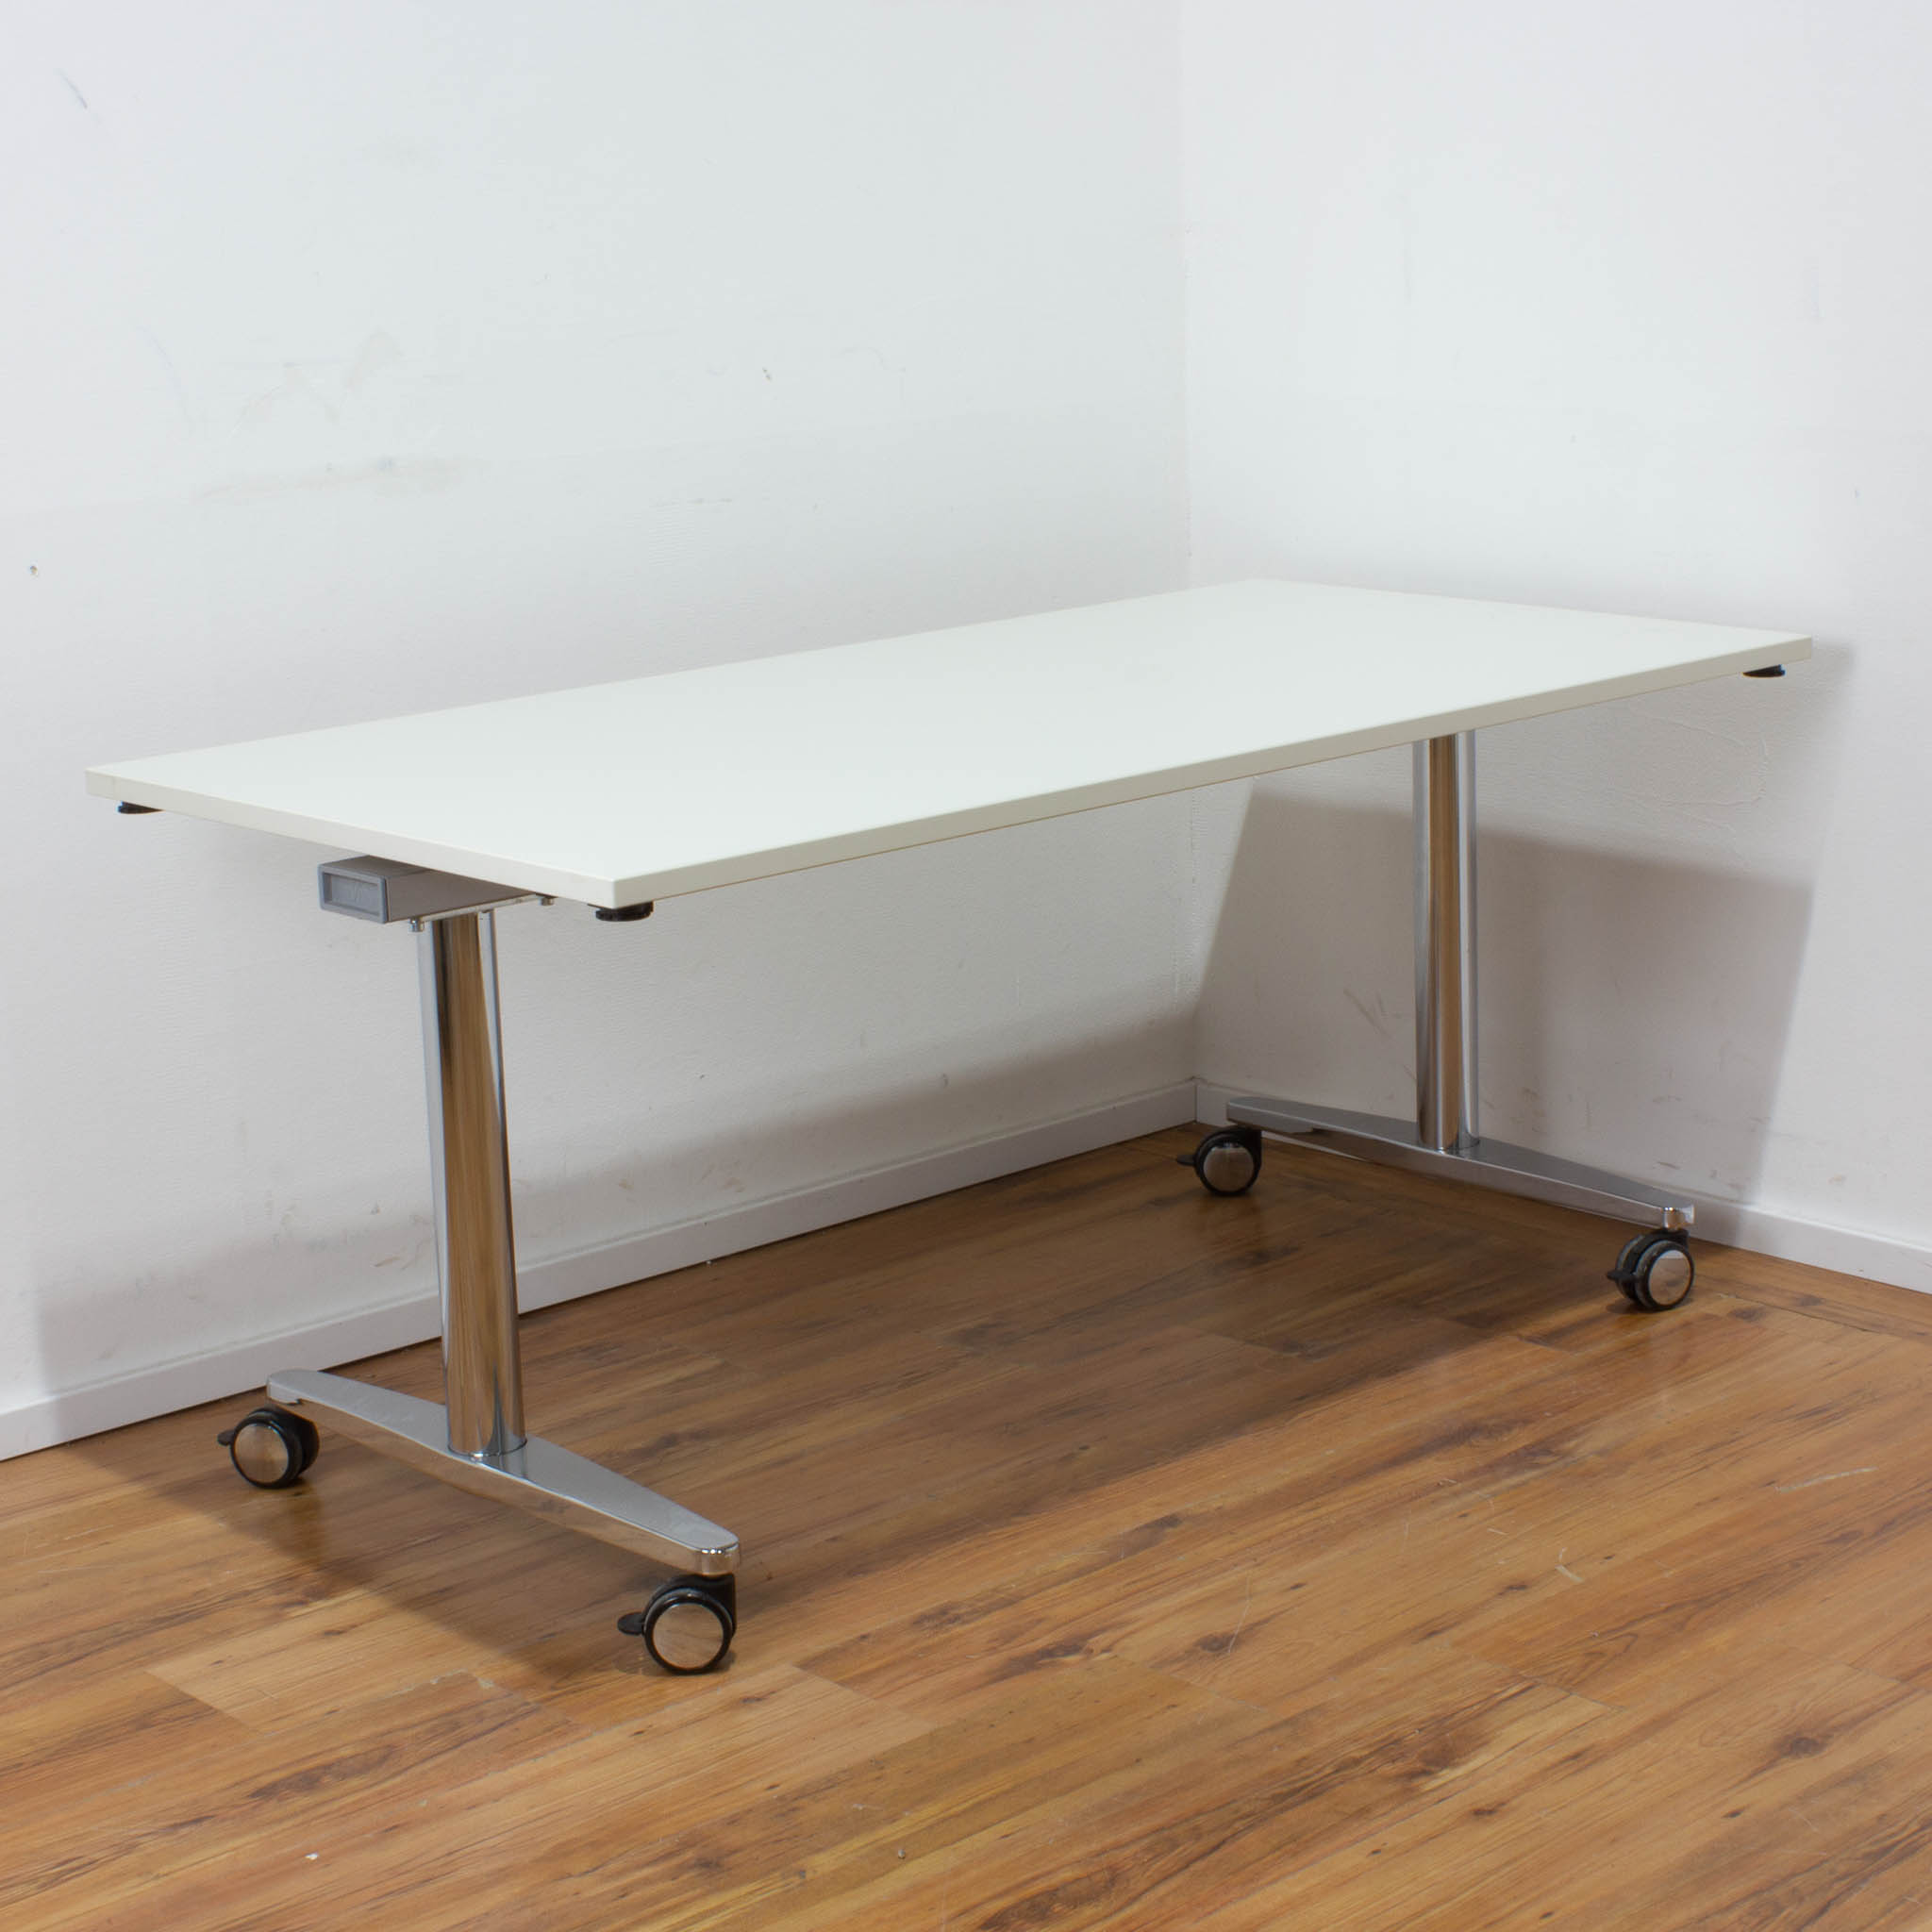 Schreibtisch - weiß - klappbar - 160 x 80 cm - koppelbar mit weiteren Schreibtischen